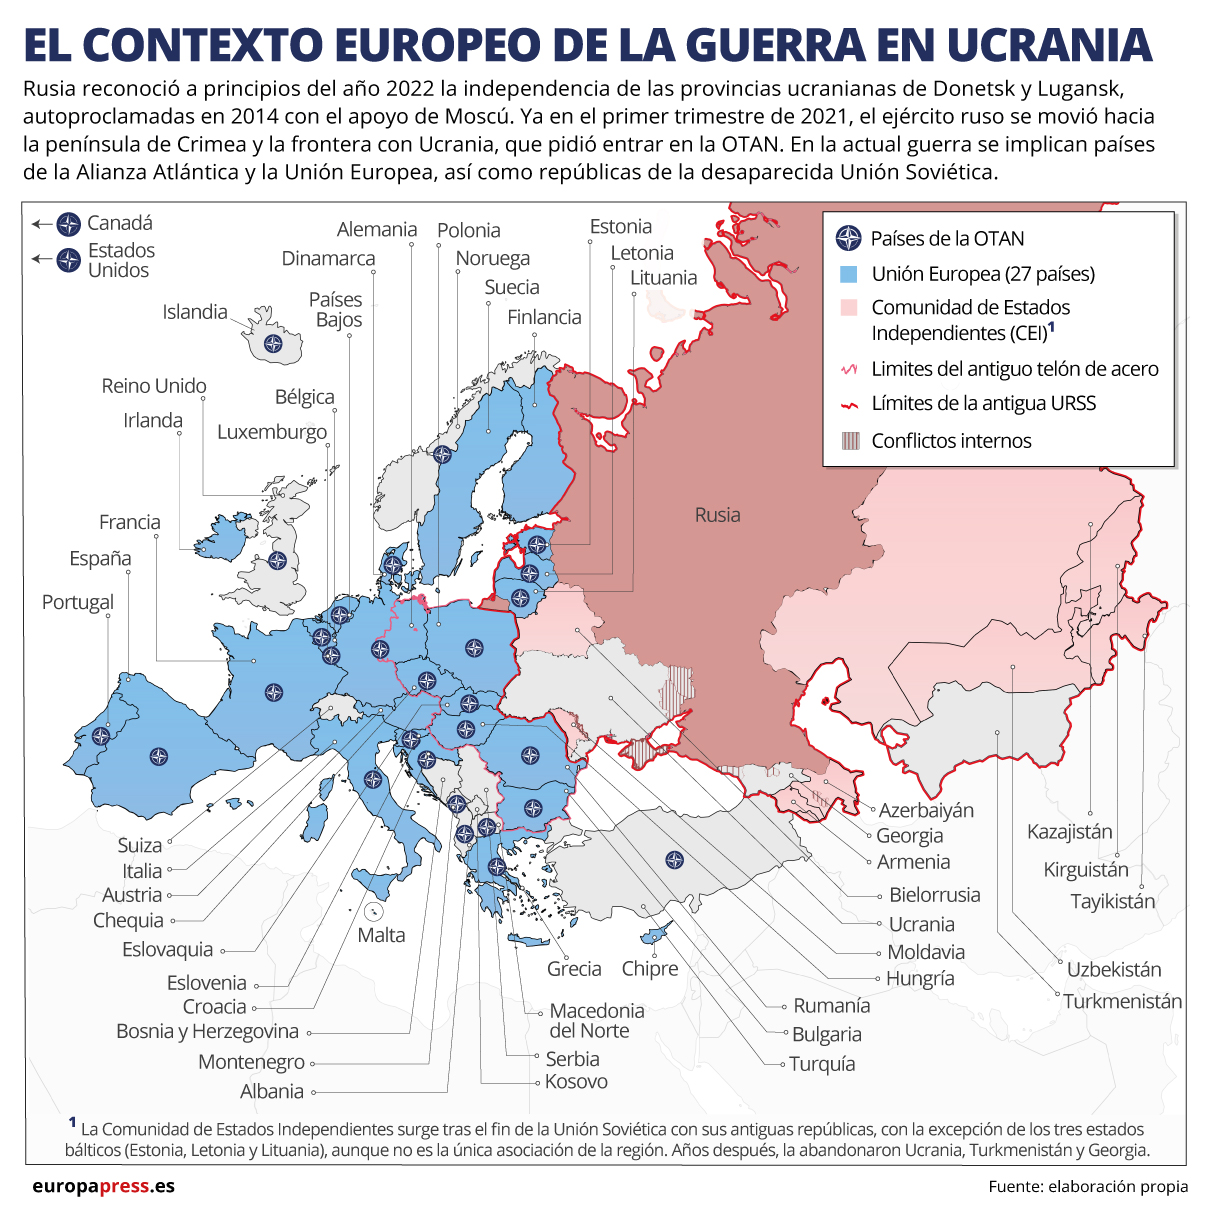 El contexto europeo de la guerra en Ucrania